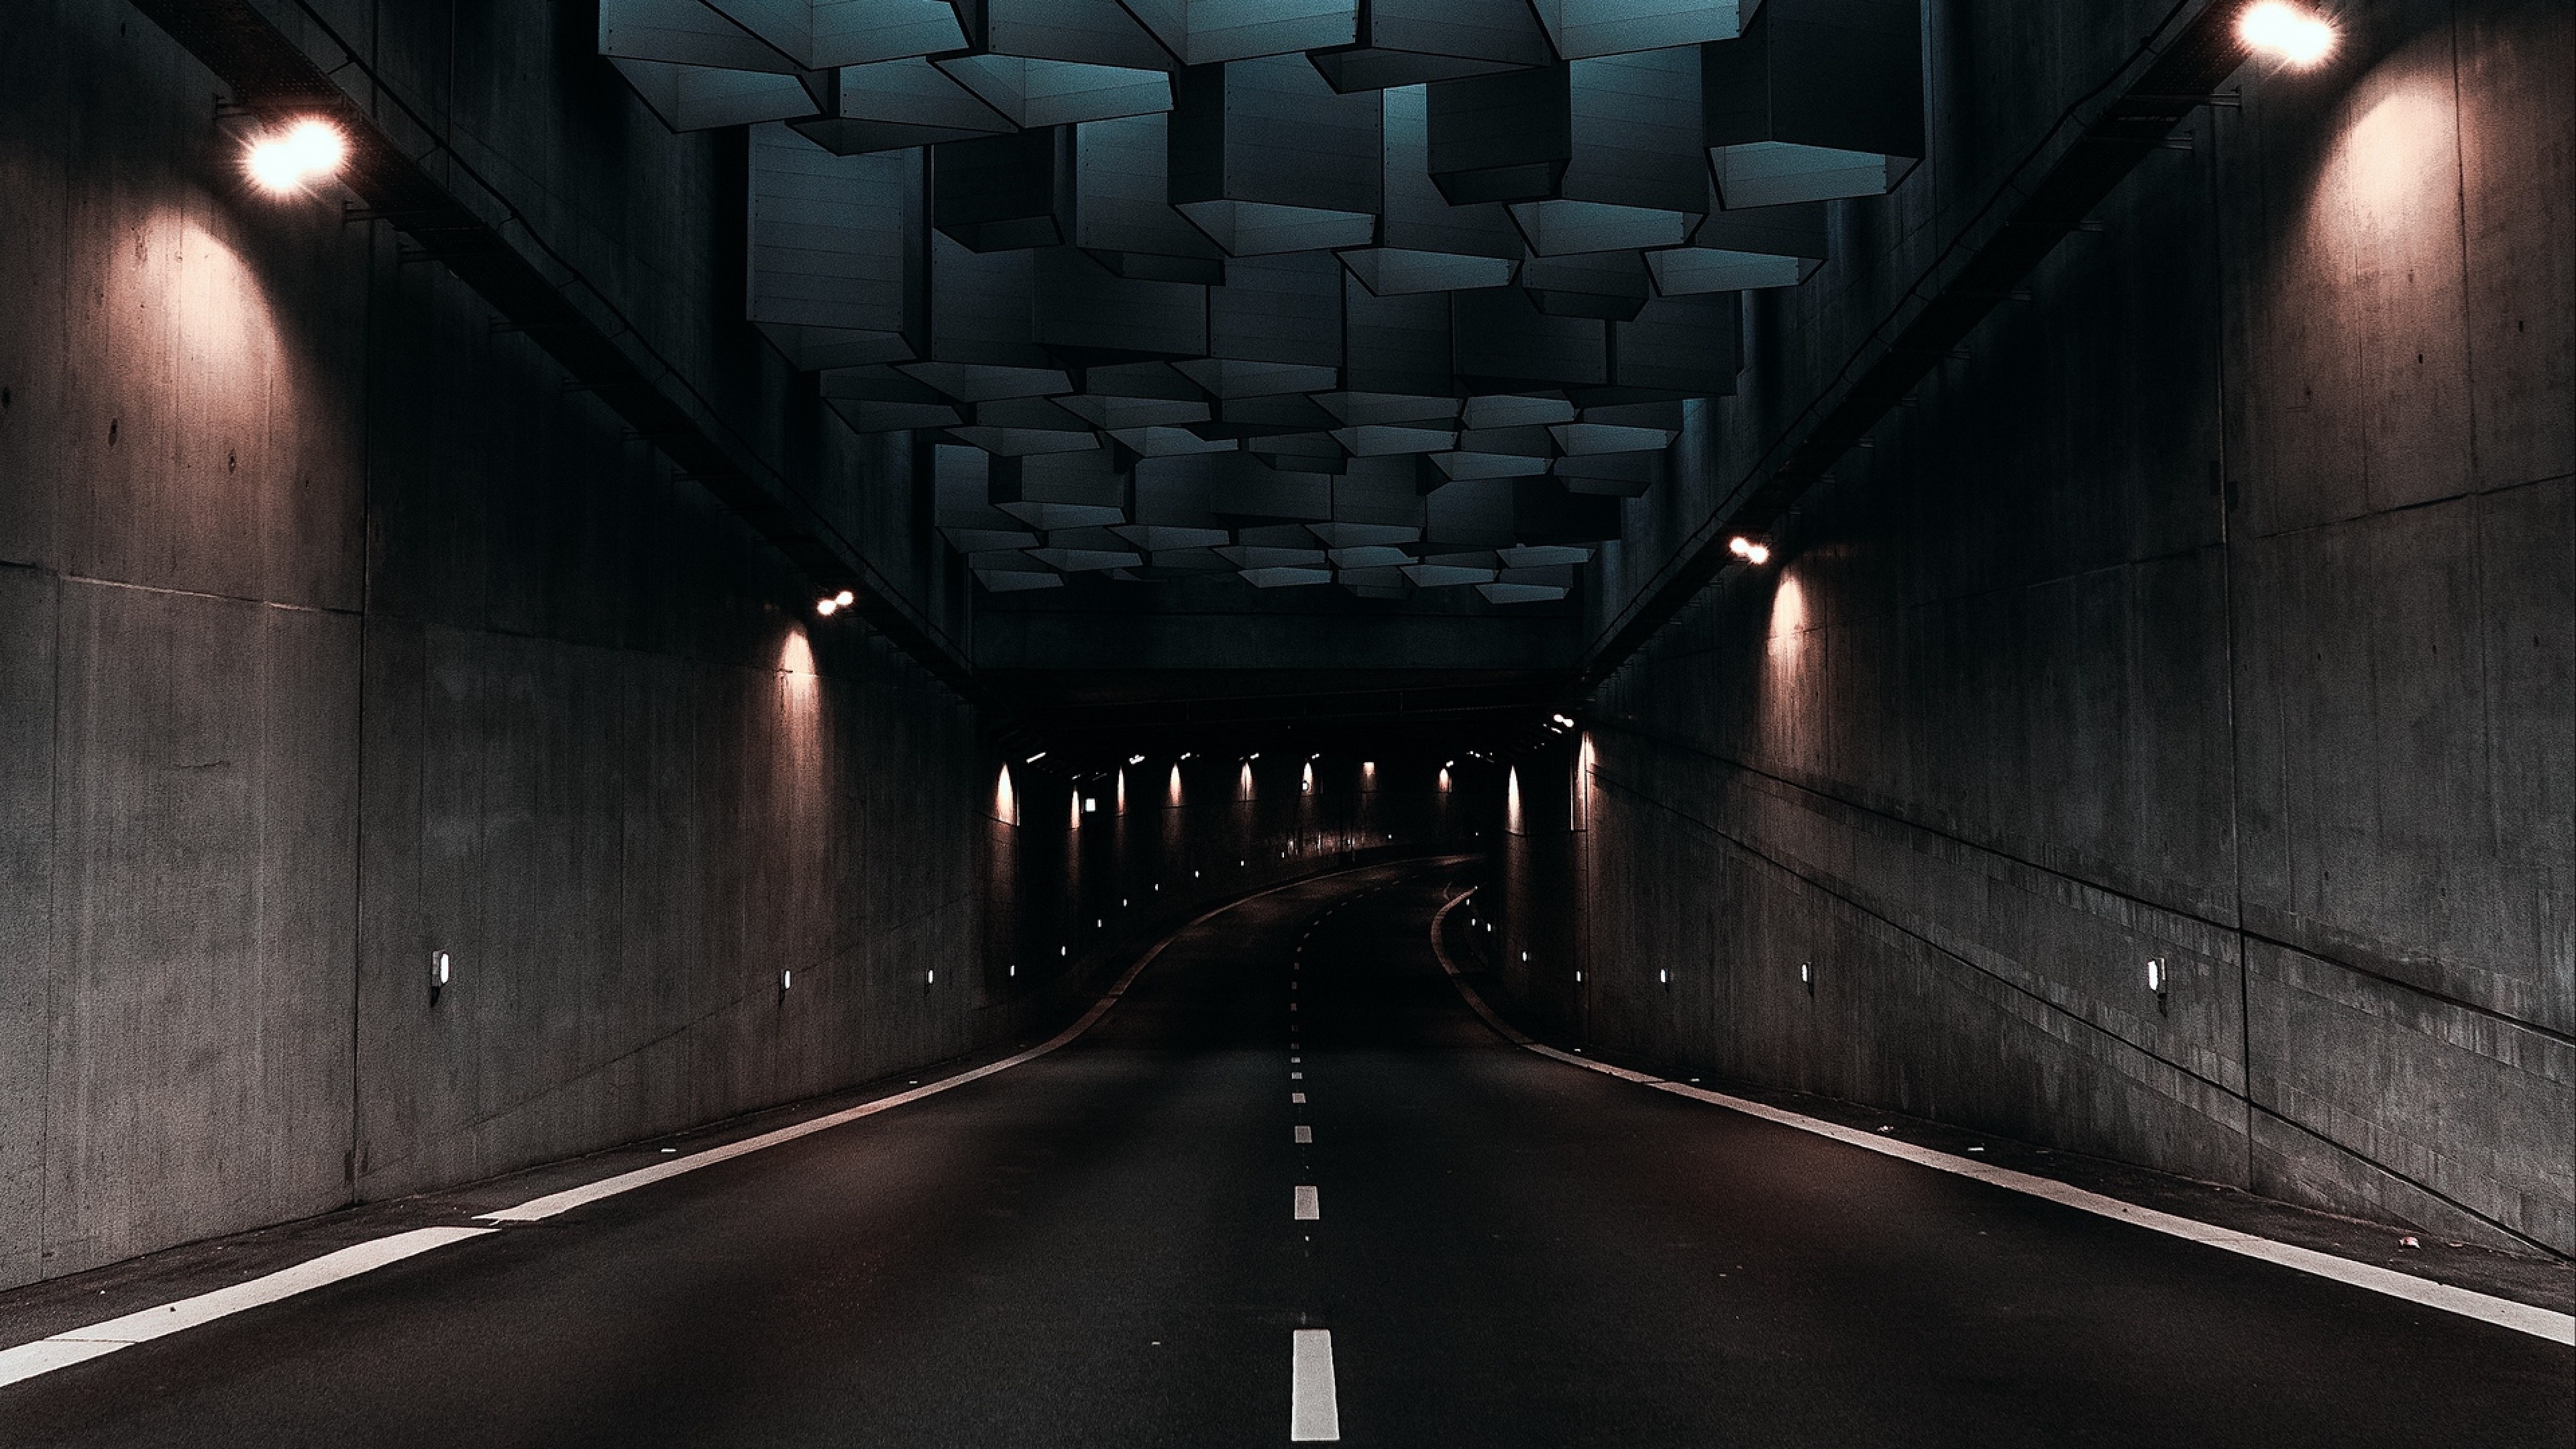 Denmark tunnel, Architectural marvel, Urban infrastructure, Futuristic design, 3840x2160 4K Desktop